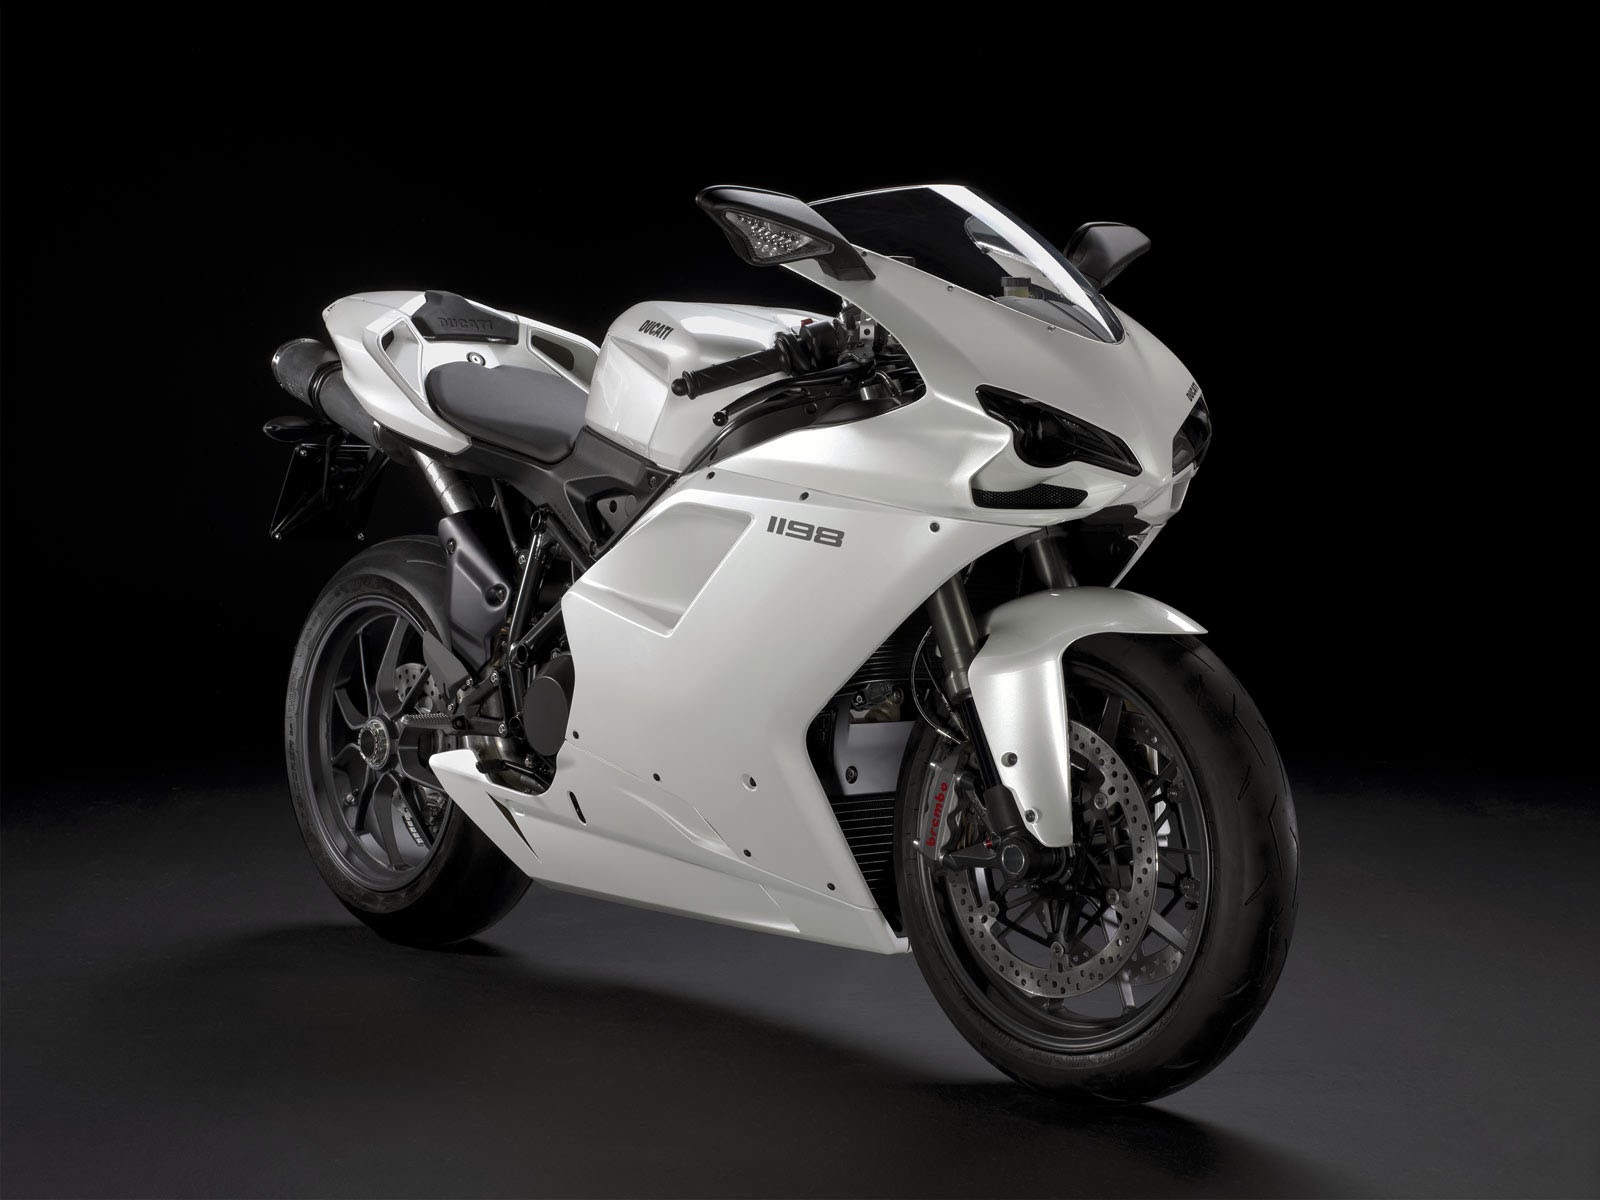 Koleksi Gambar Motor Ducati Keren Terlengkap Kinyis Motor